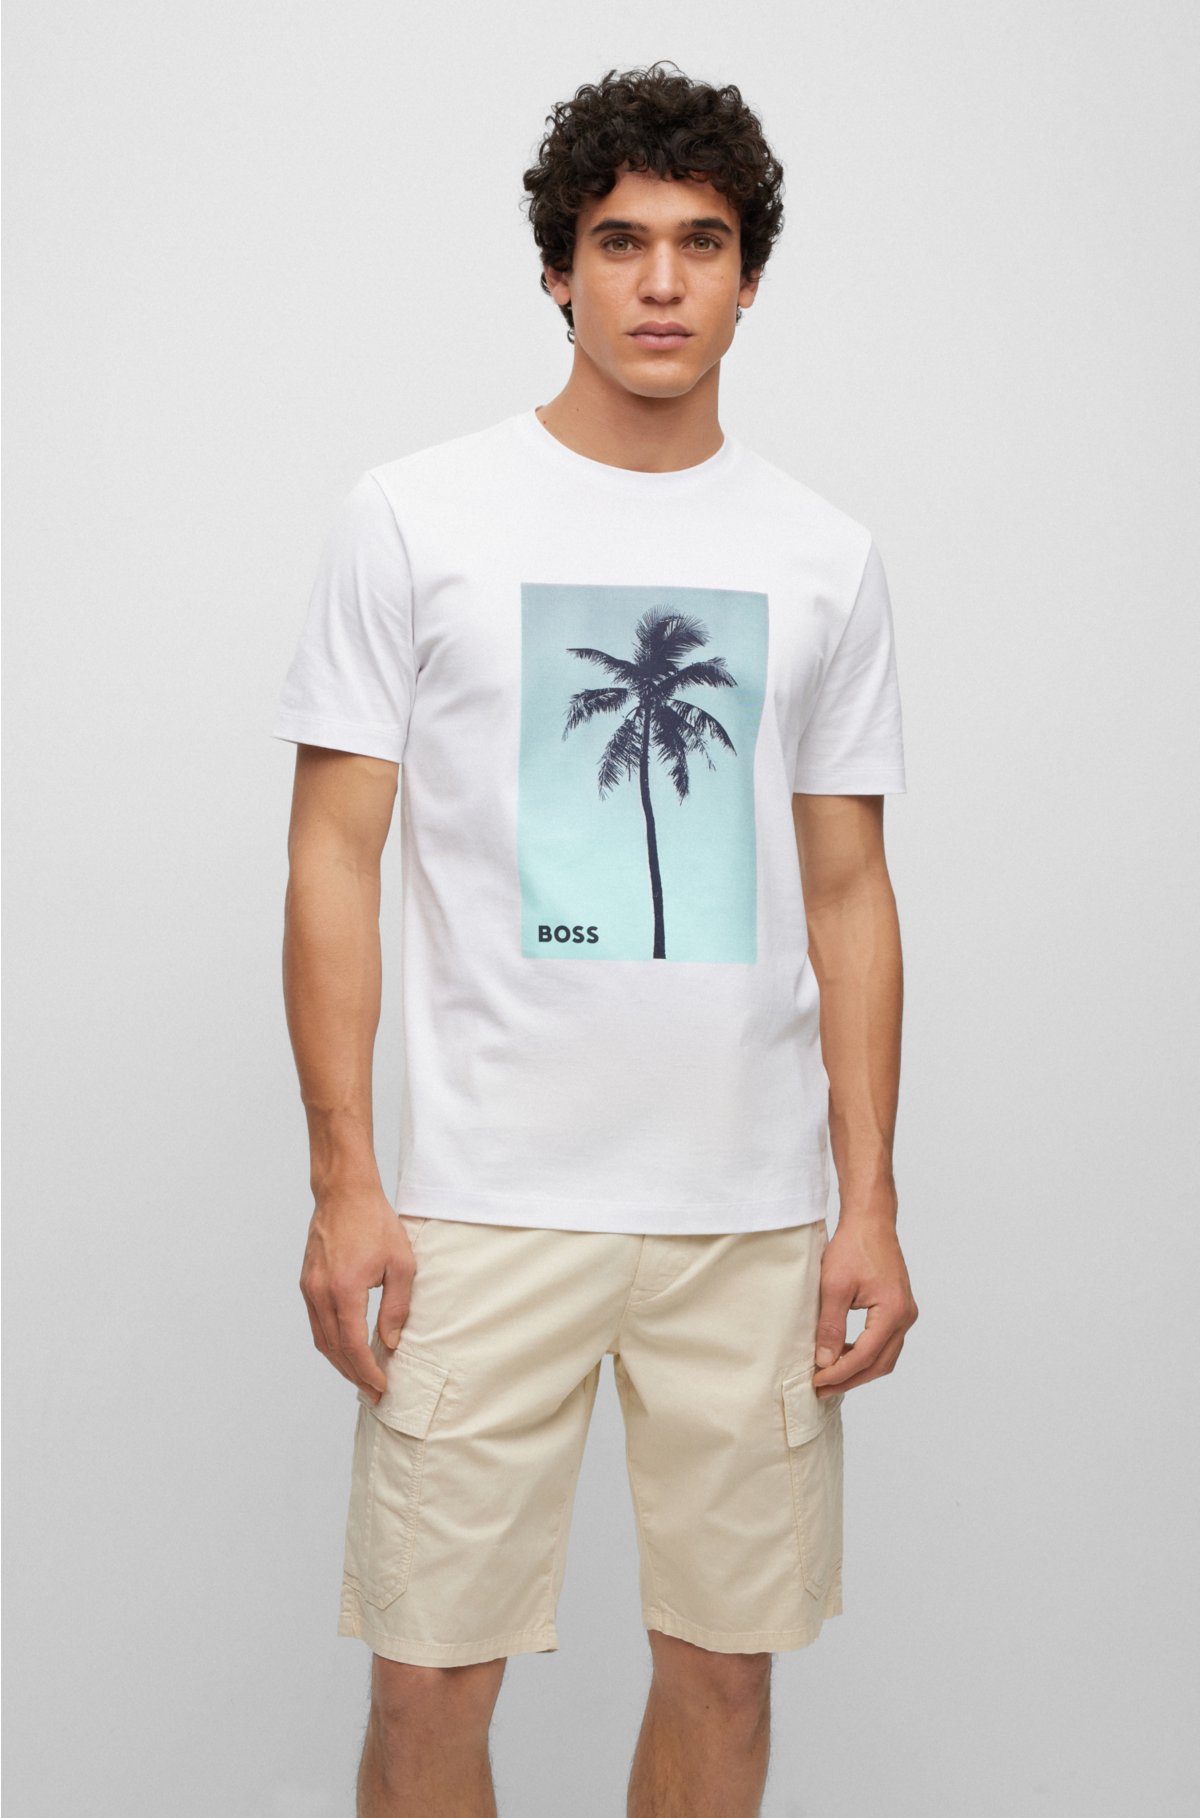 Openlijk Gepensioneerde kortademigheid BOSS - T-shirt van katoenen jersey bedrukt met palmboom